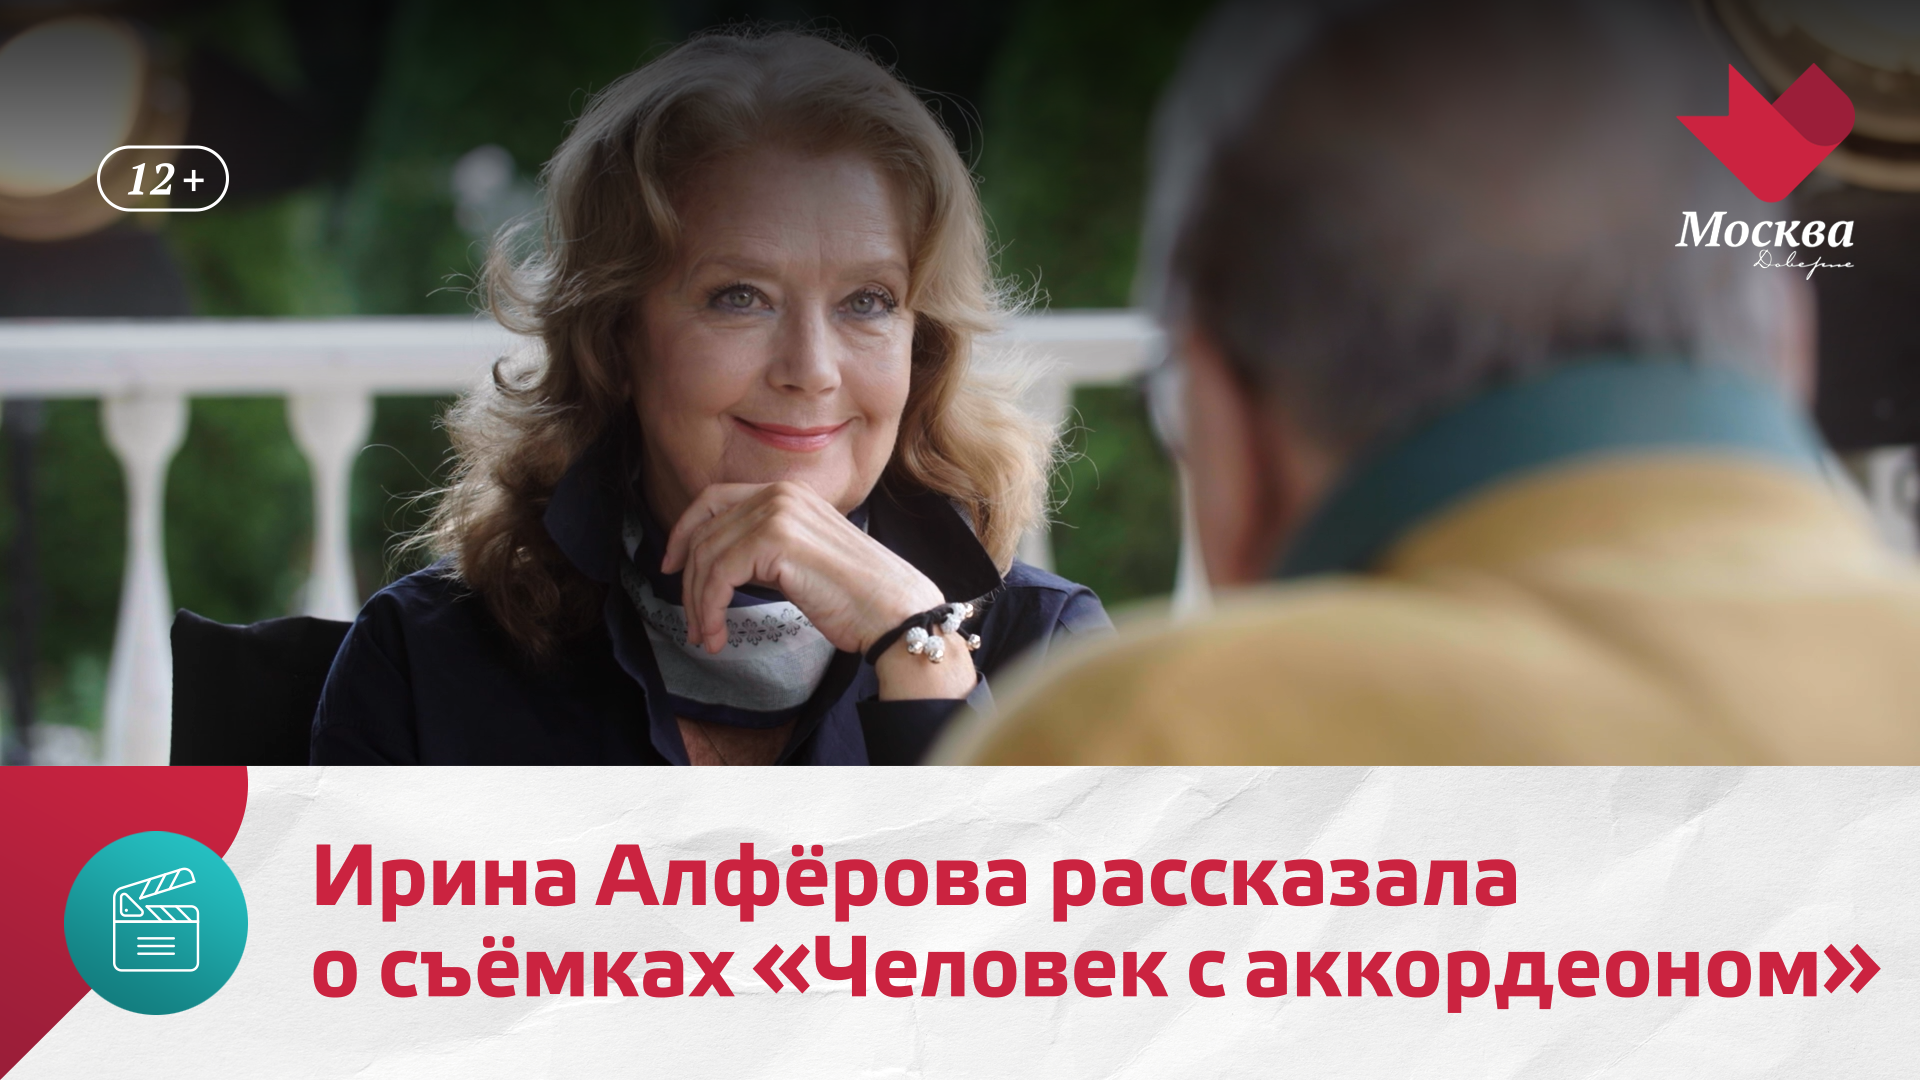 Ирина Алфёрова рассказала о съёмках фильма «Человек с аккордеоном» | Киноулица